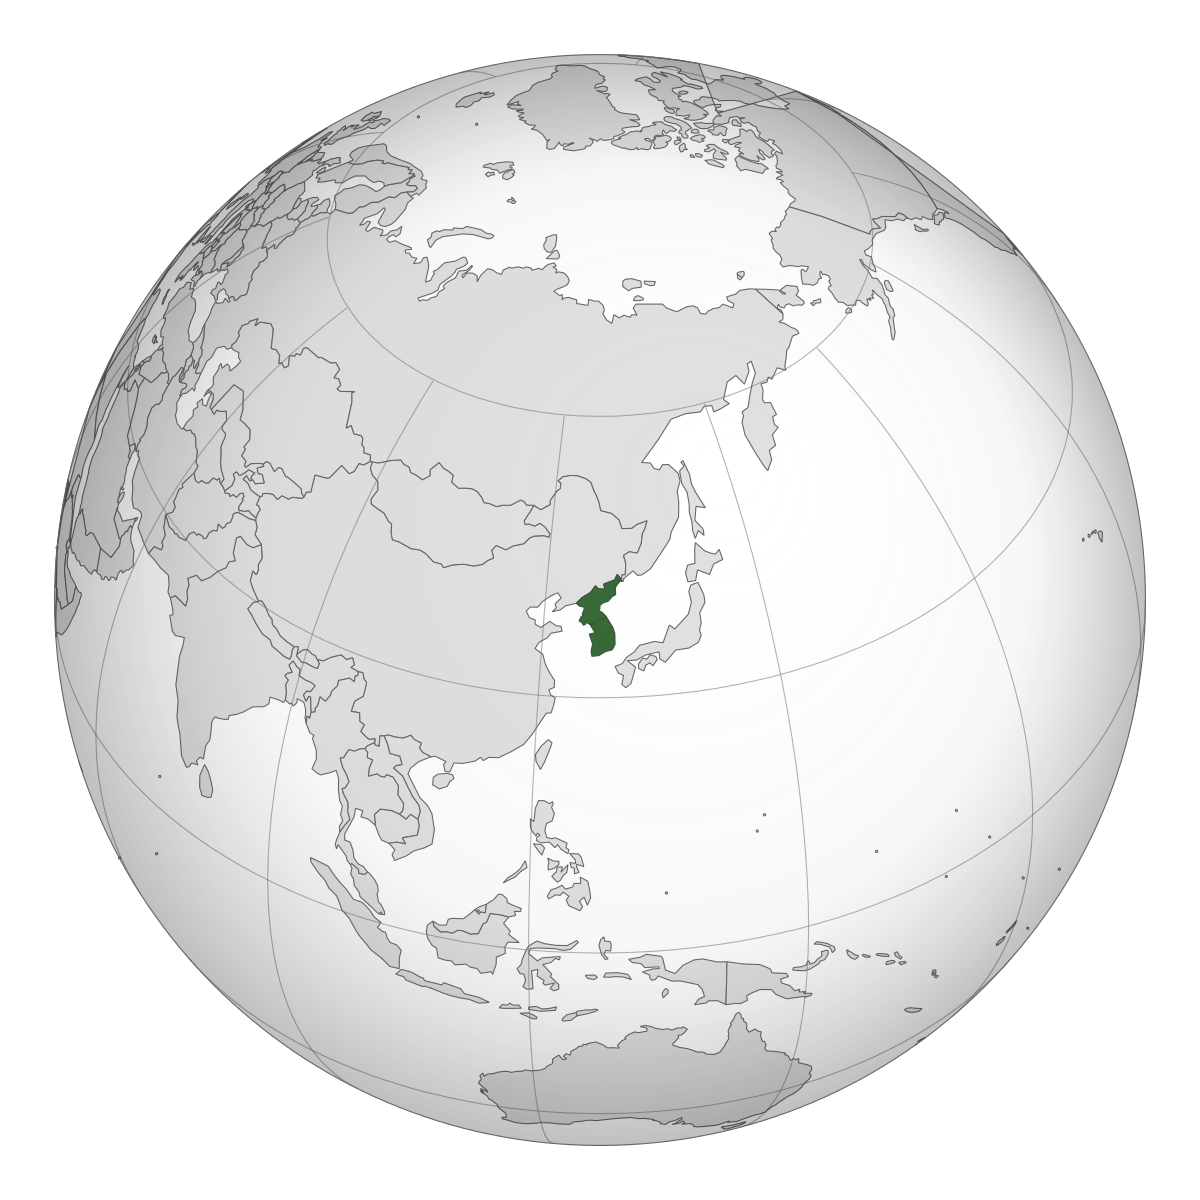 kisspng-south-korea-joseon-north-korea-korean-empire-divis-korea-5aca2cd9a71a23.5057139615231991936845.png